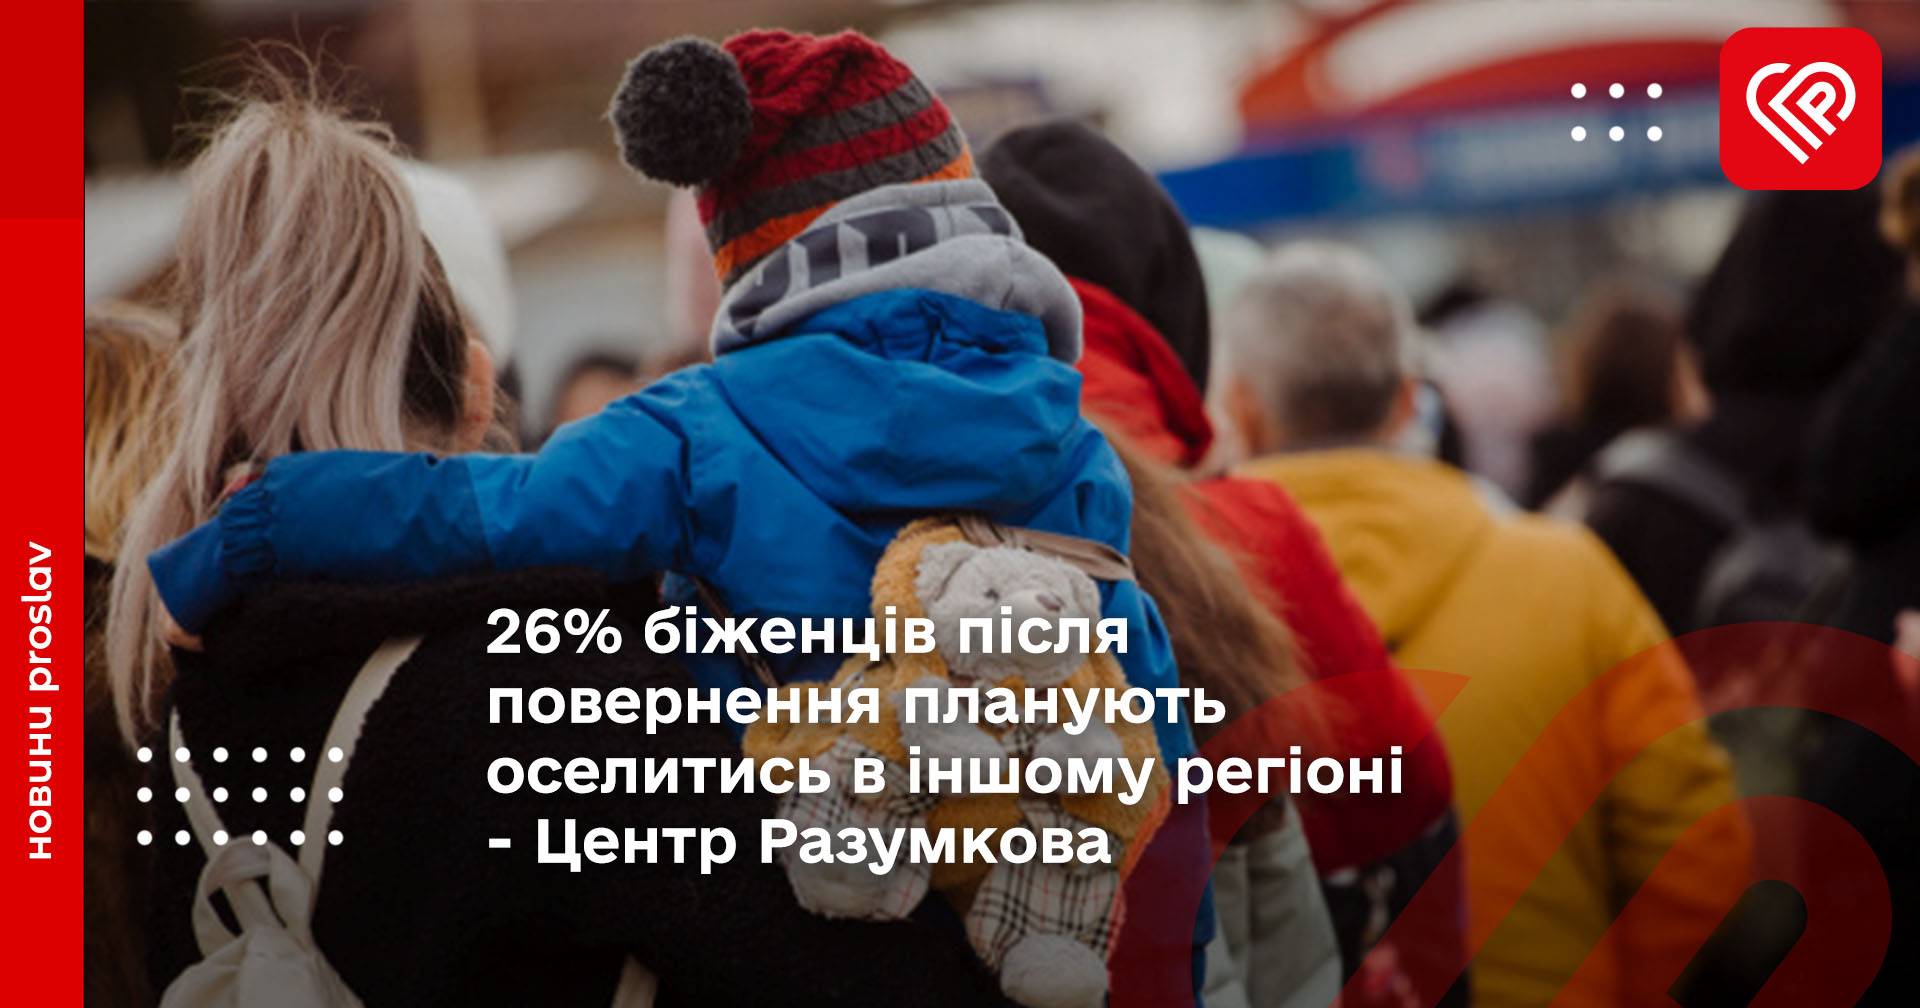 26% біженців після повернення планують оселитись в іншому регіоні - Центр Разумкова